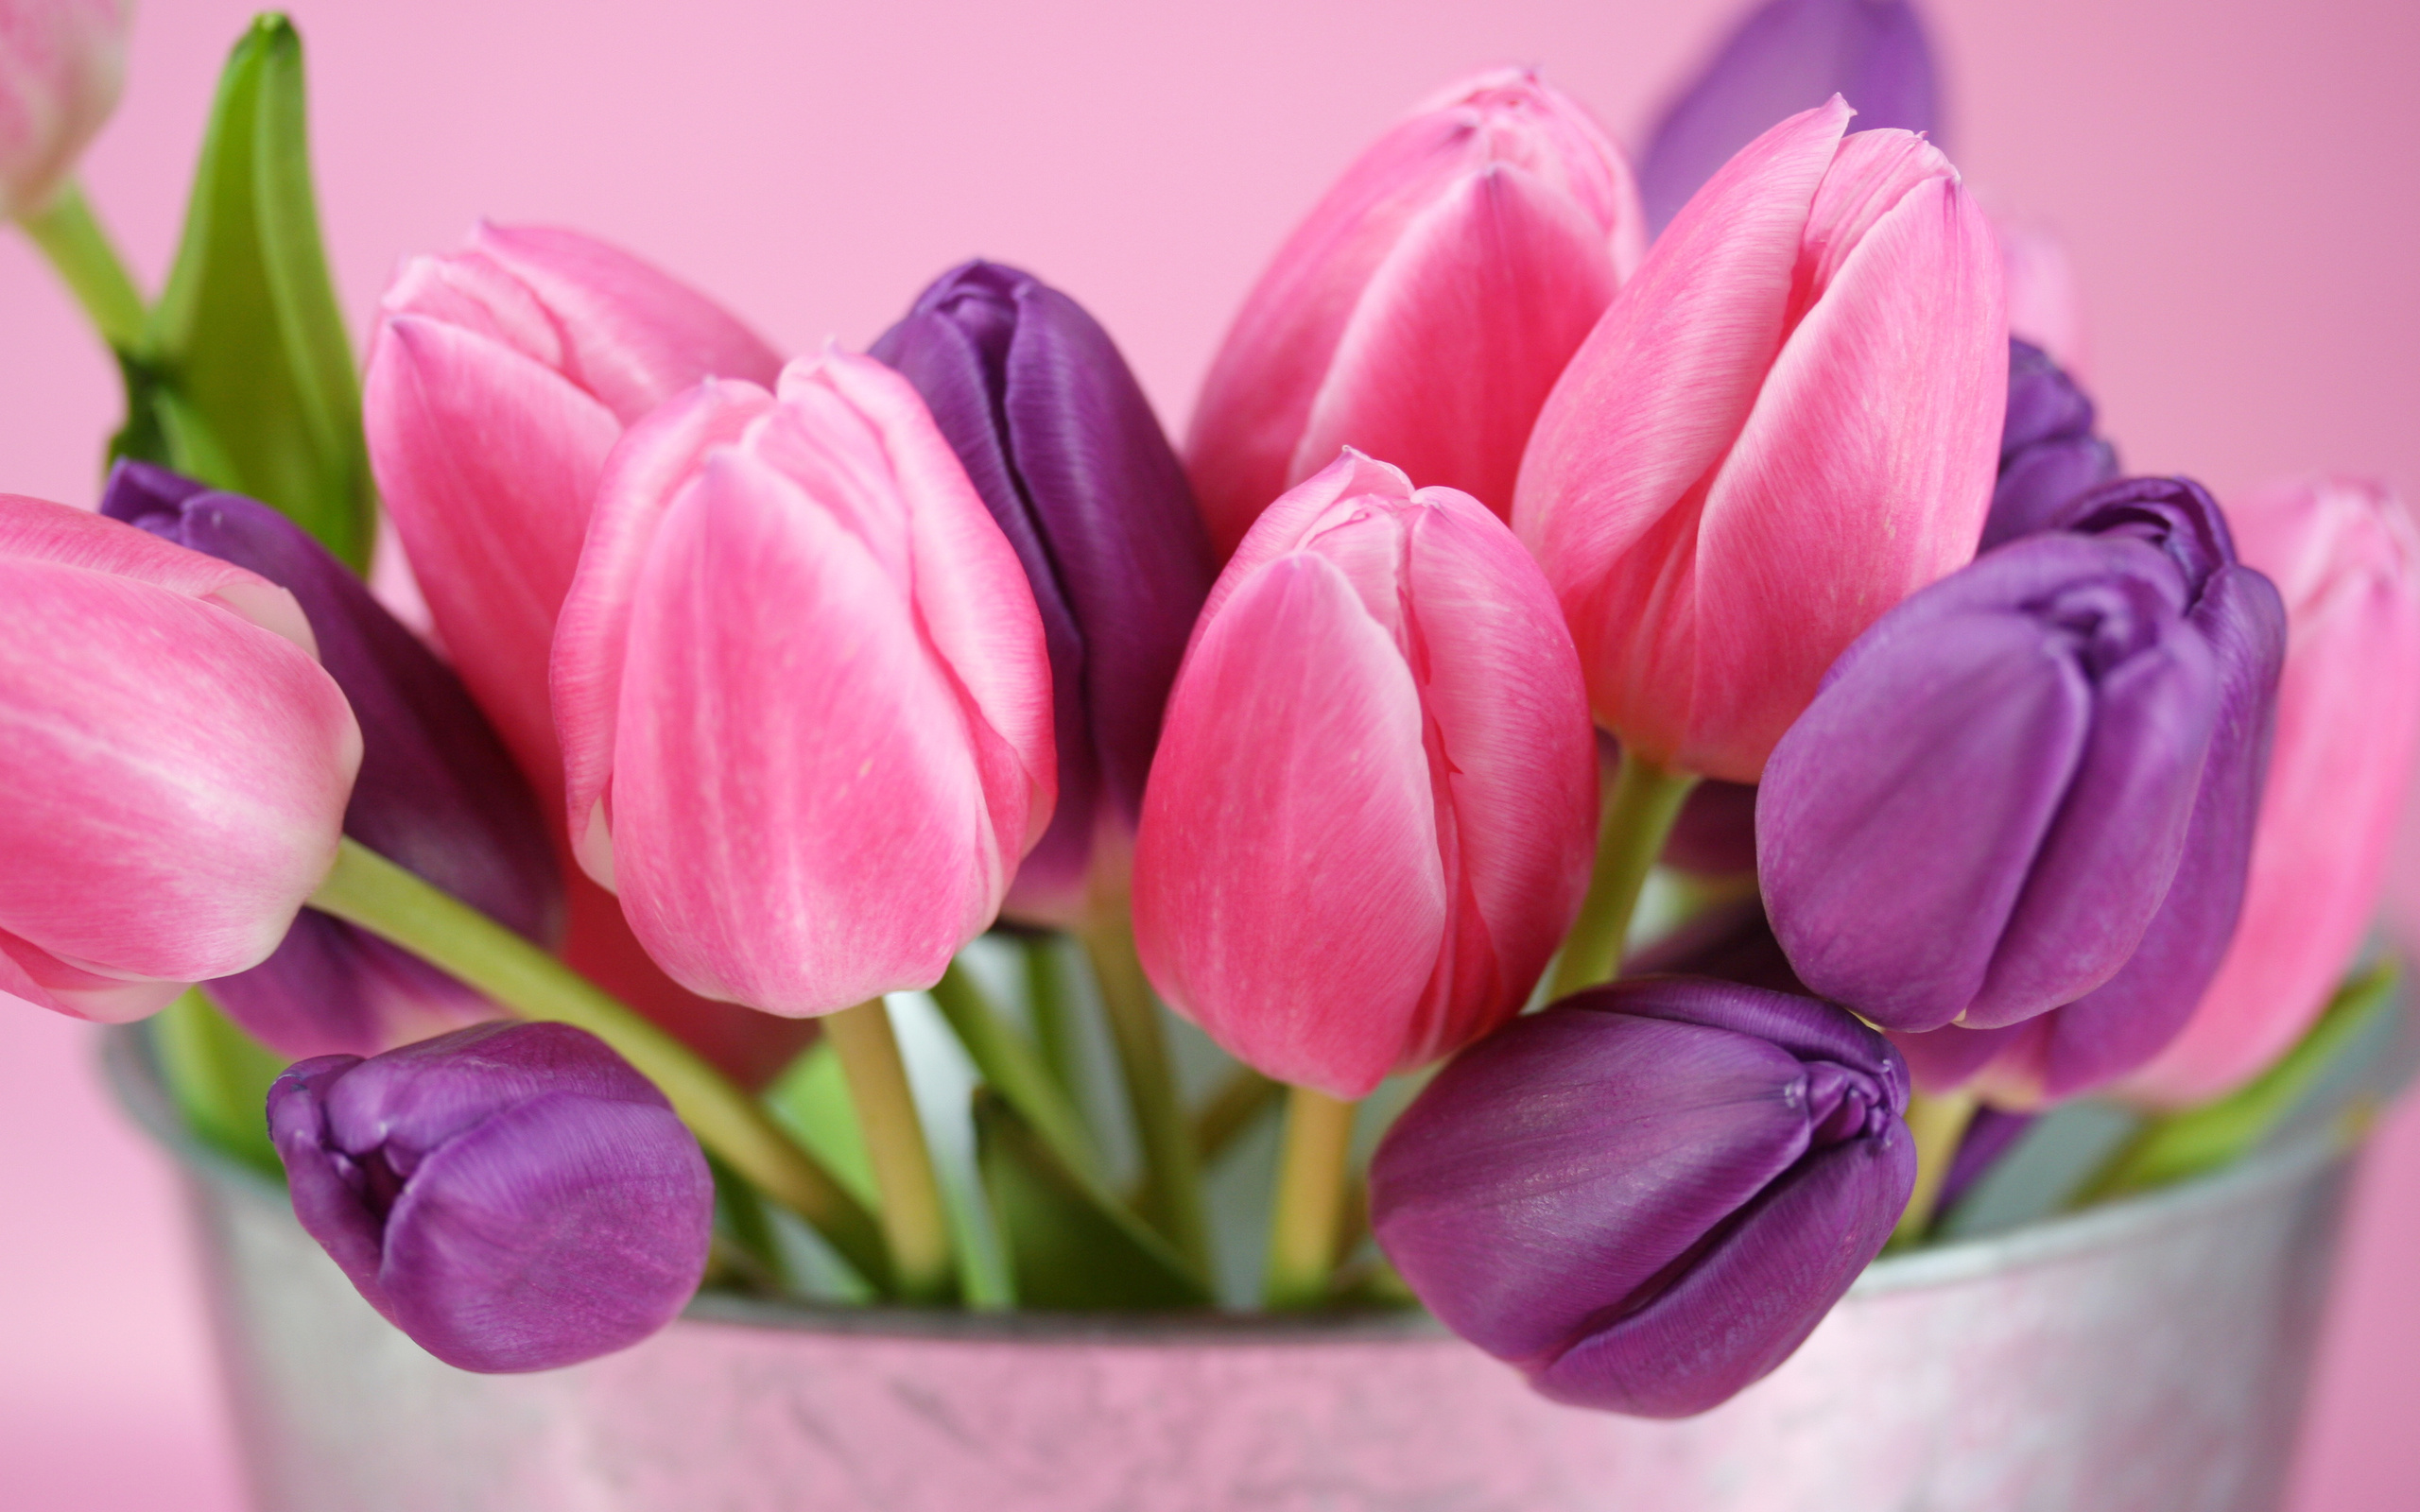 இந்த வார சிறப்பு கவிஞர் விருது [20/04/2015 முதல் 26/04/2015] 4MCrW7UtQWsl0ycryRrO+7025034-purple-pink-tulips